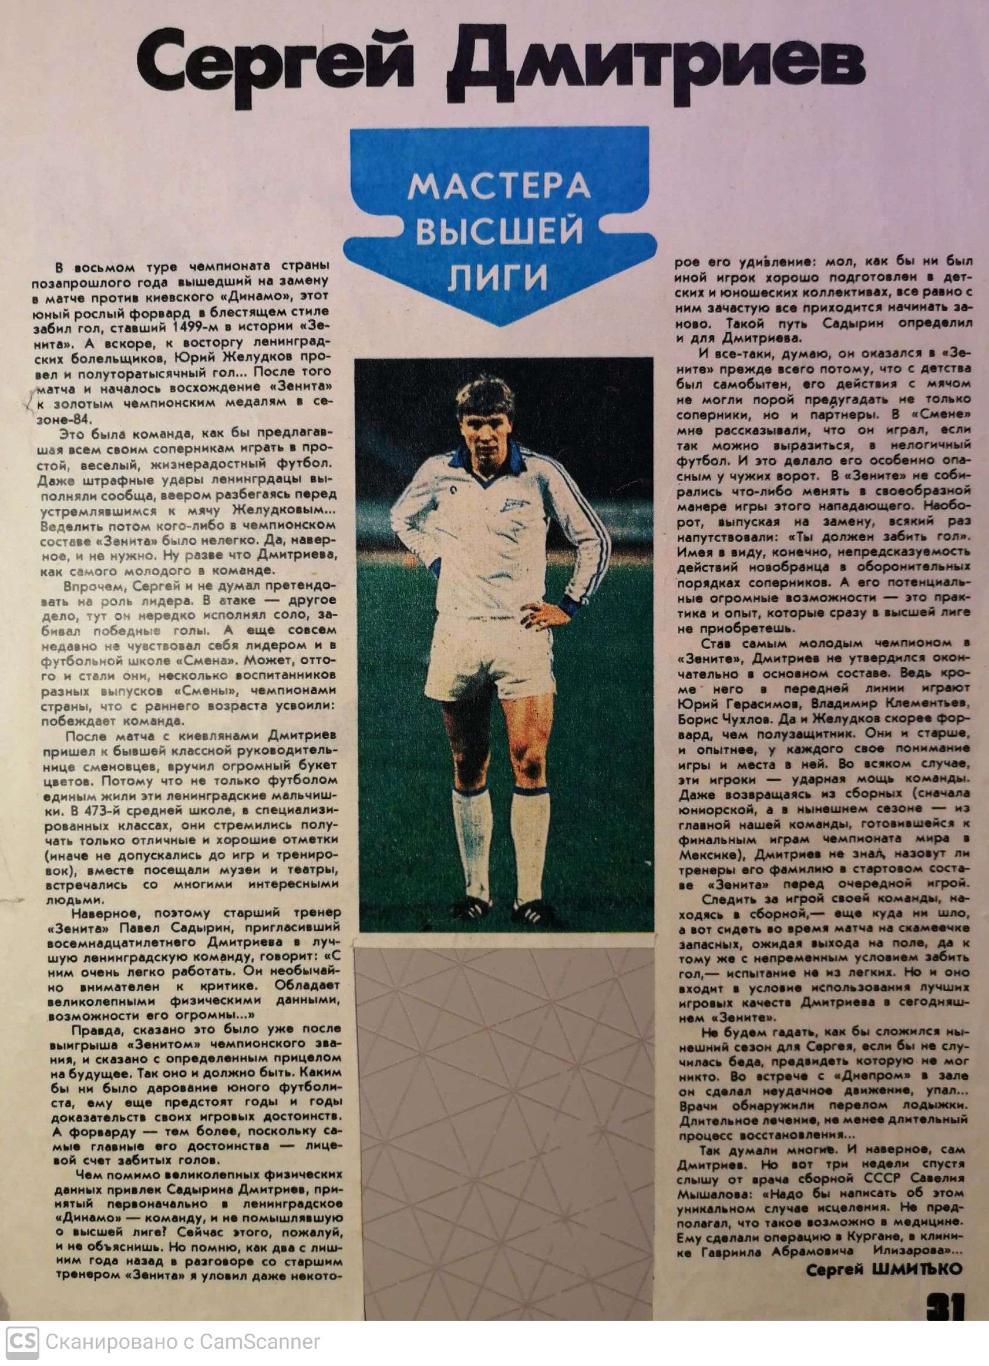 Очерк с Сергее Дмитриеве, Зенит, 1986 г.(из журнала Физкультура и Спорт)